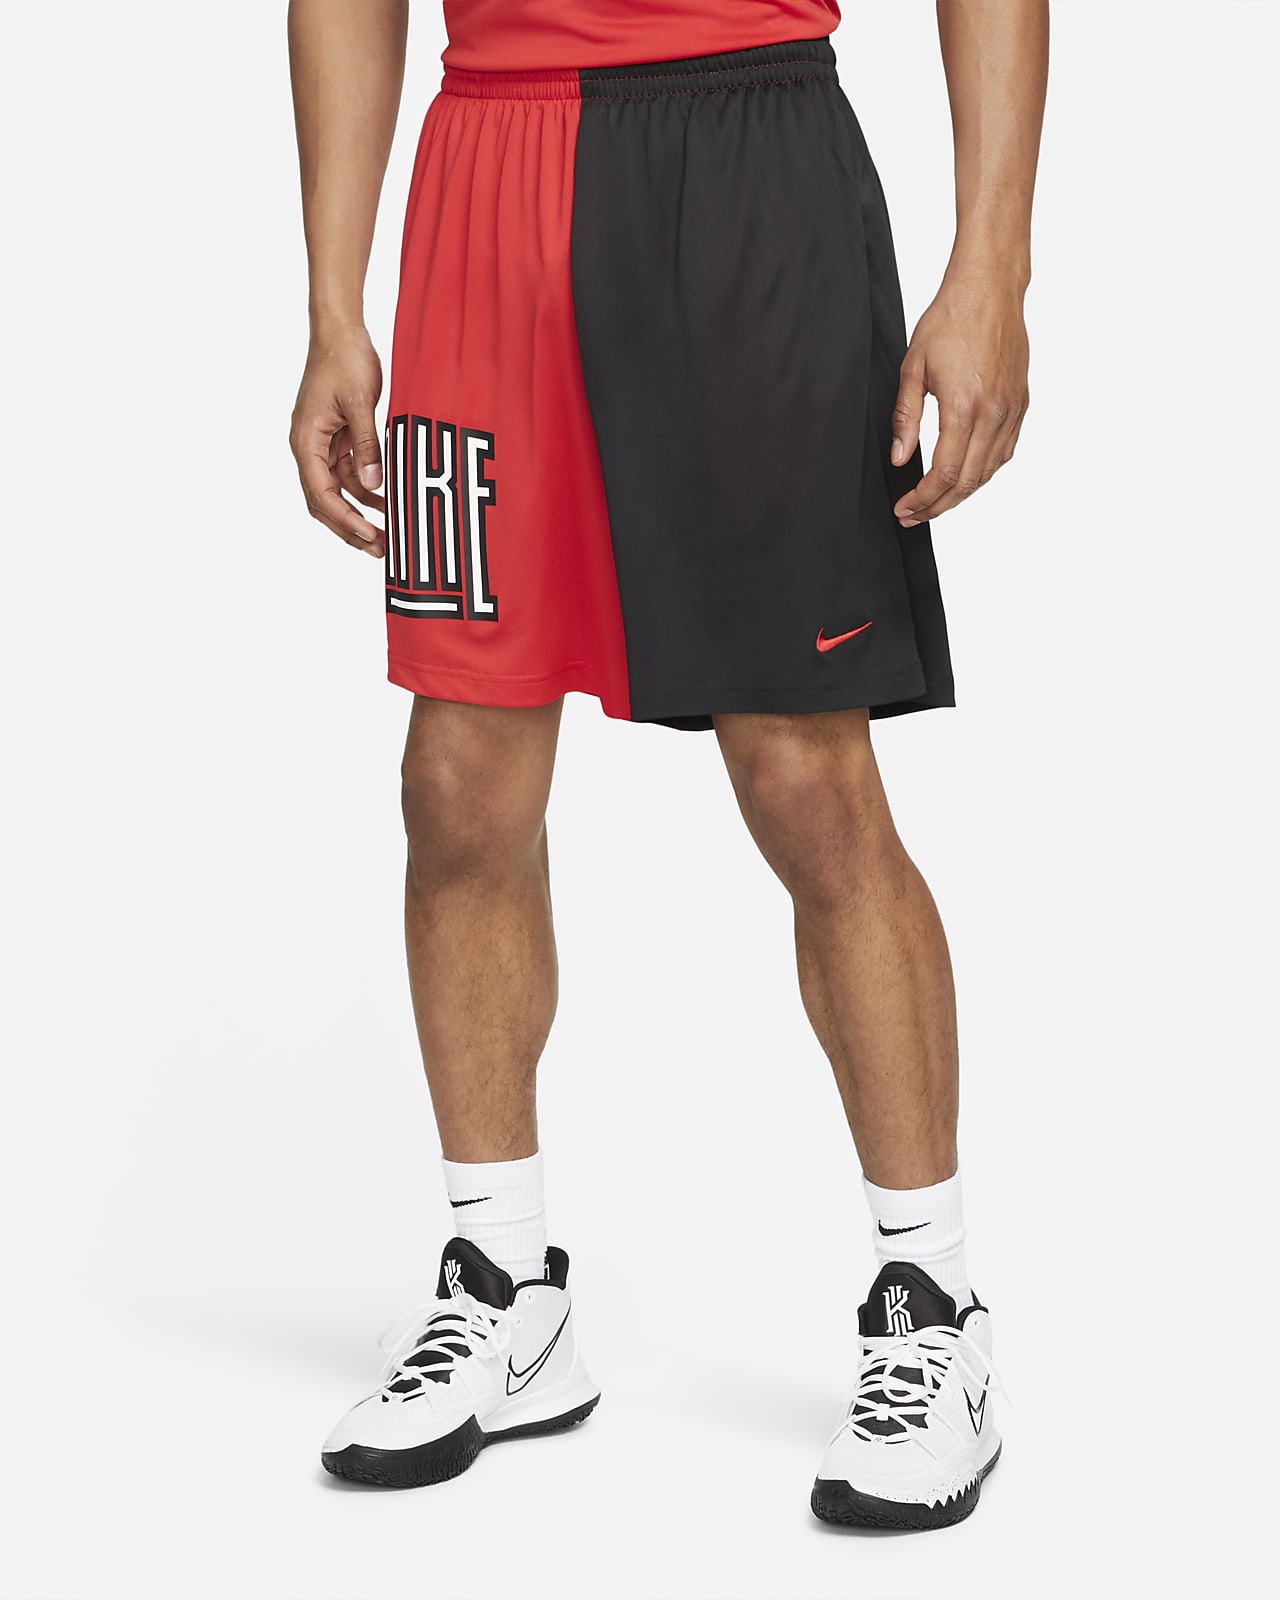 Shorts de básquetbol para hombre Nike Dri-FIT